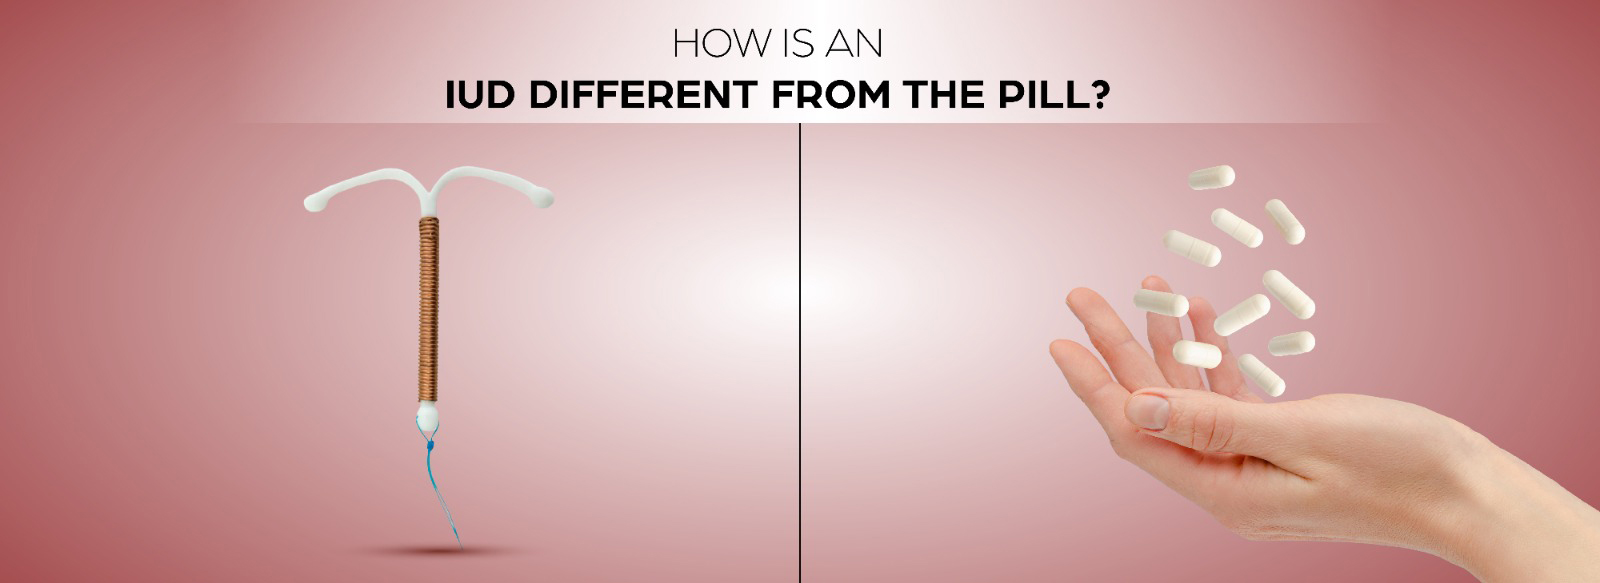 iud vs contraceptive pills difference